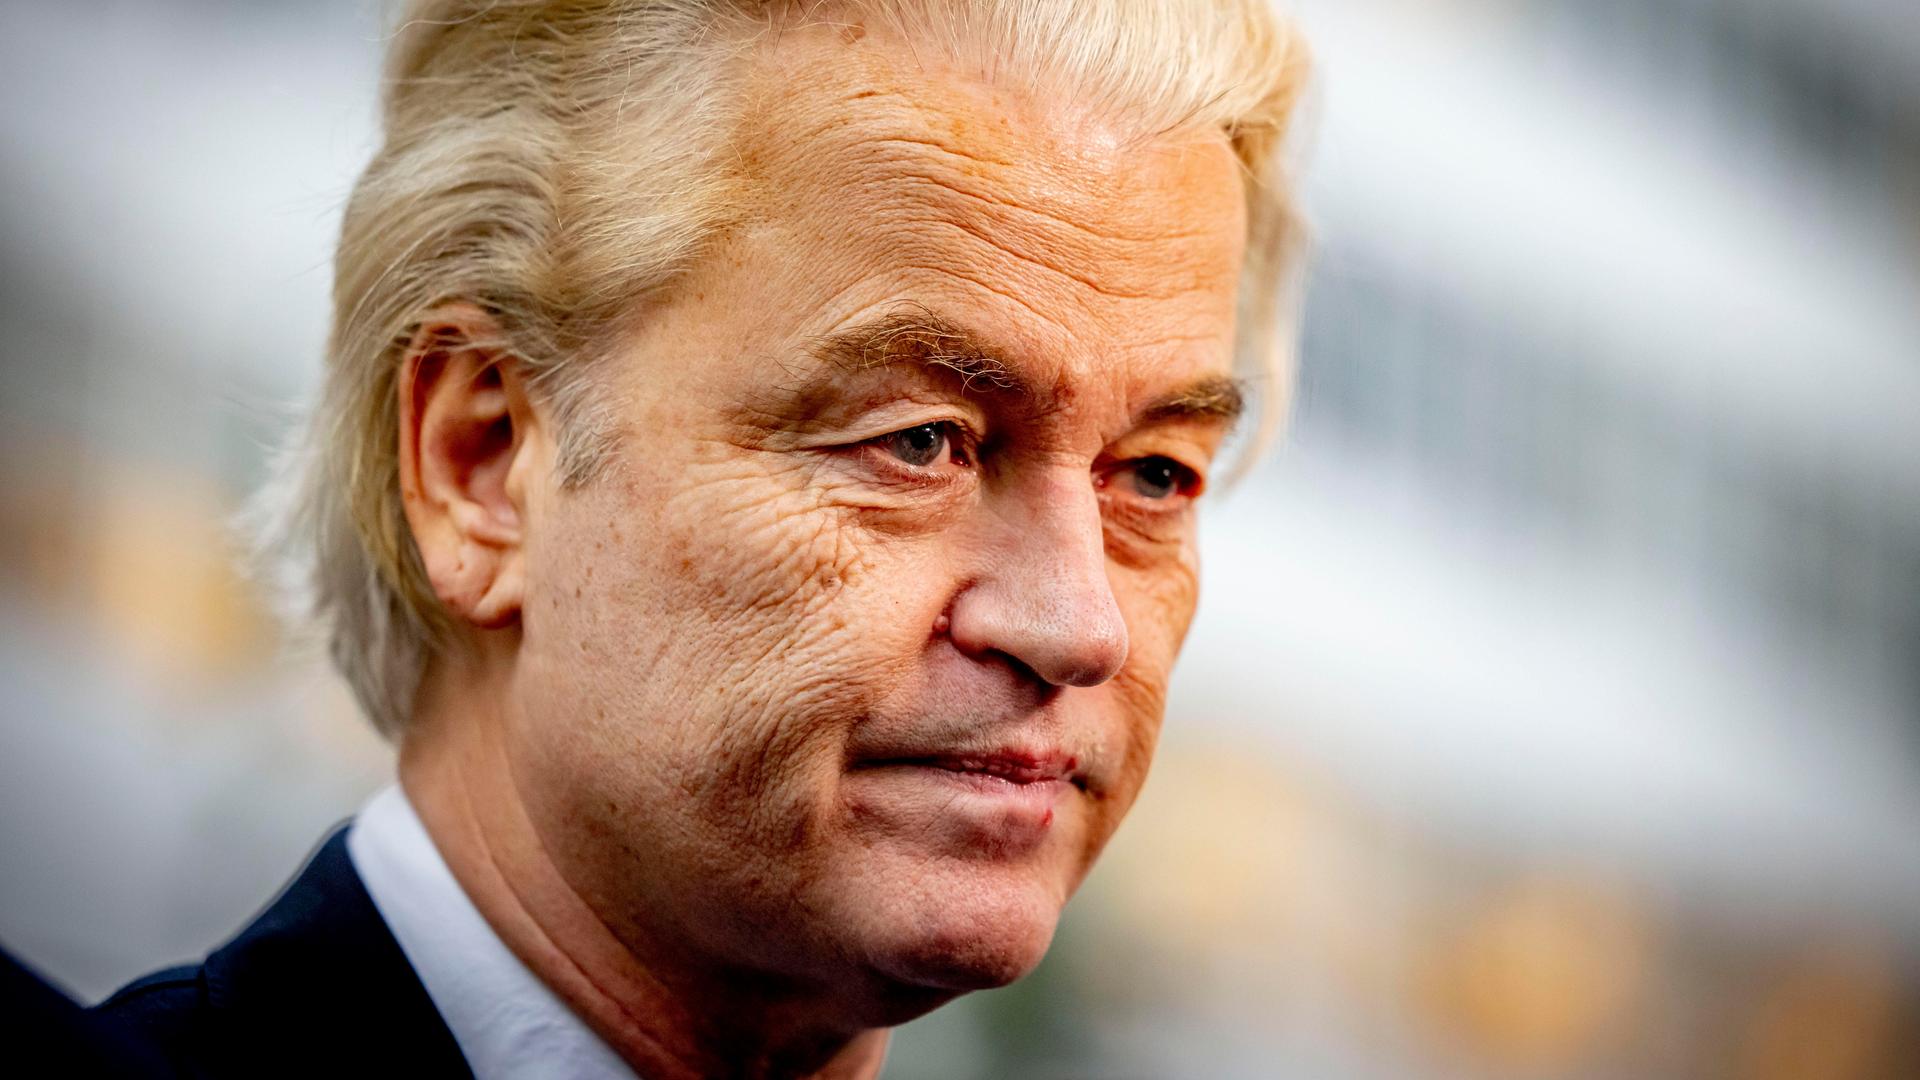 Den Haag - Neuer Versuch zur Regierungsbildung mit Islamfeind Wilders in den Niederlanden